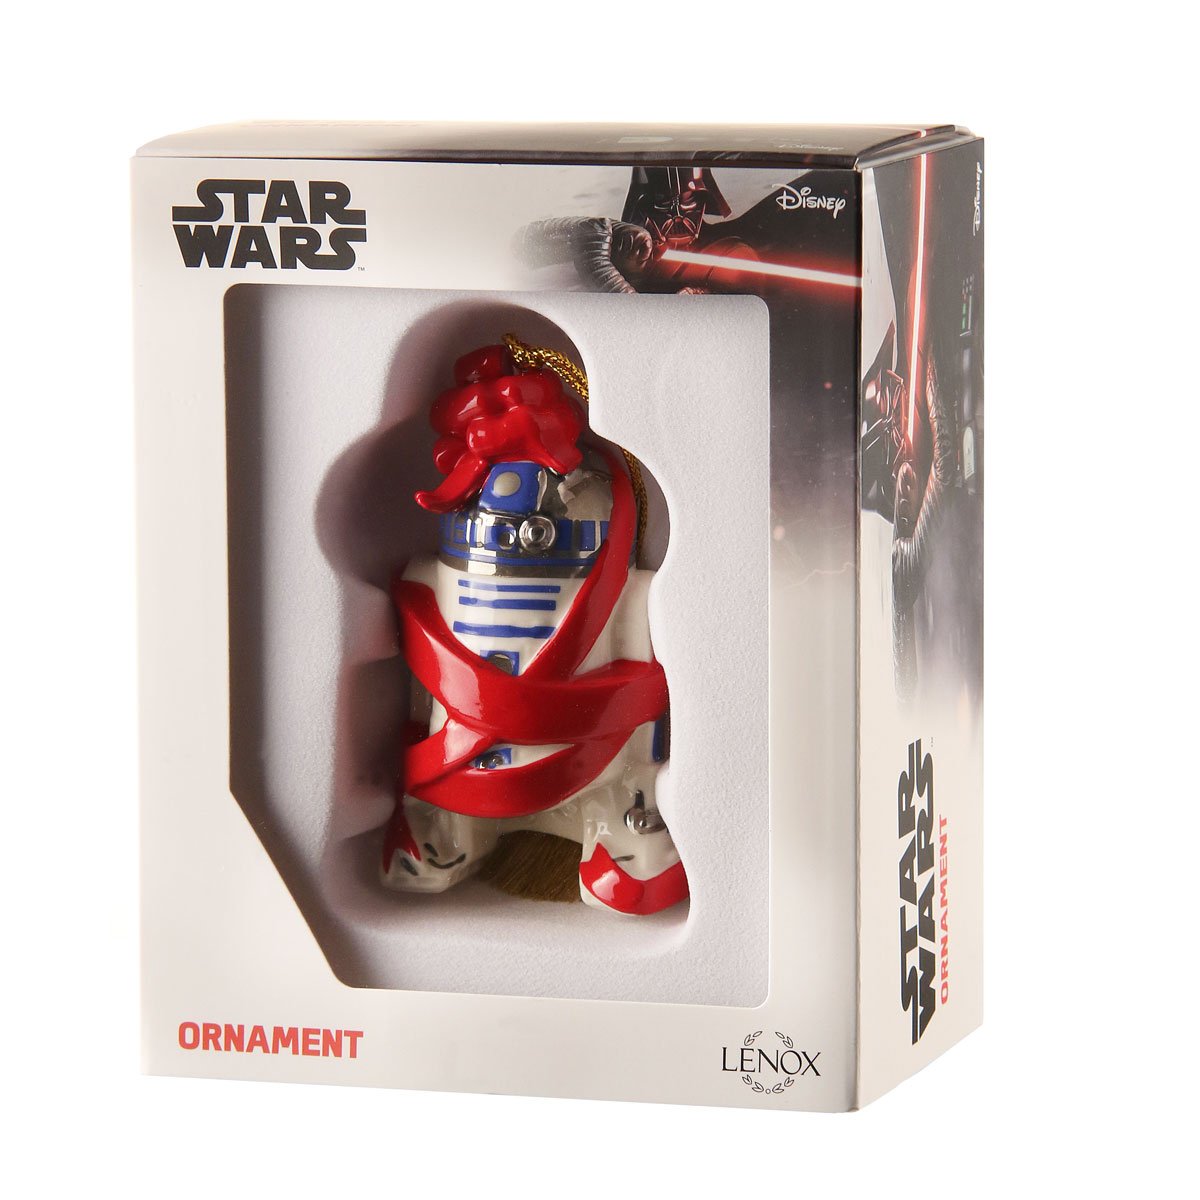 Lenox Disney Star Wars R2-D2 Ornament